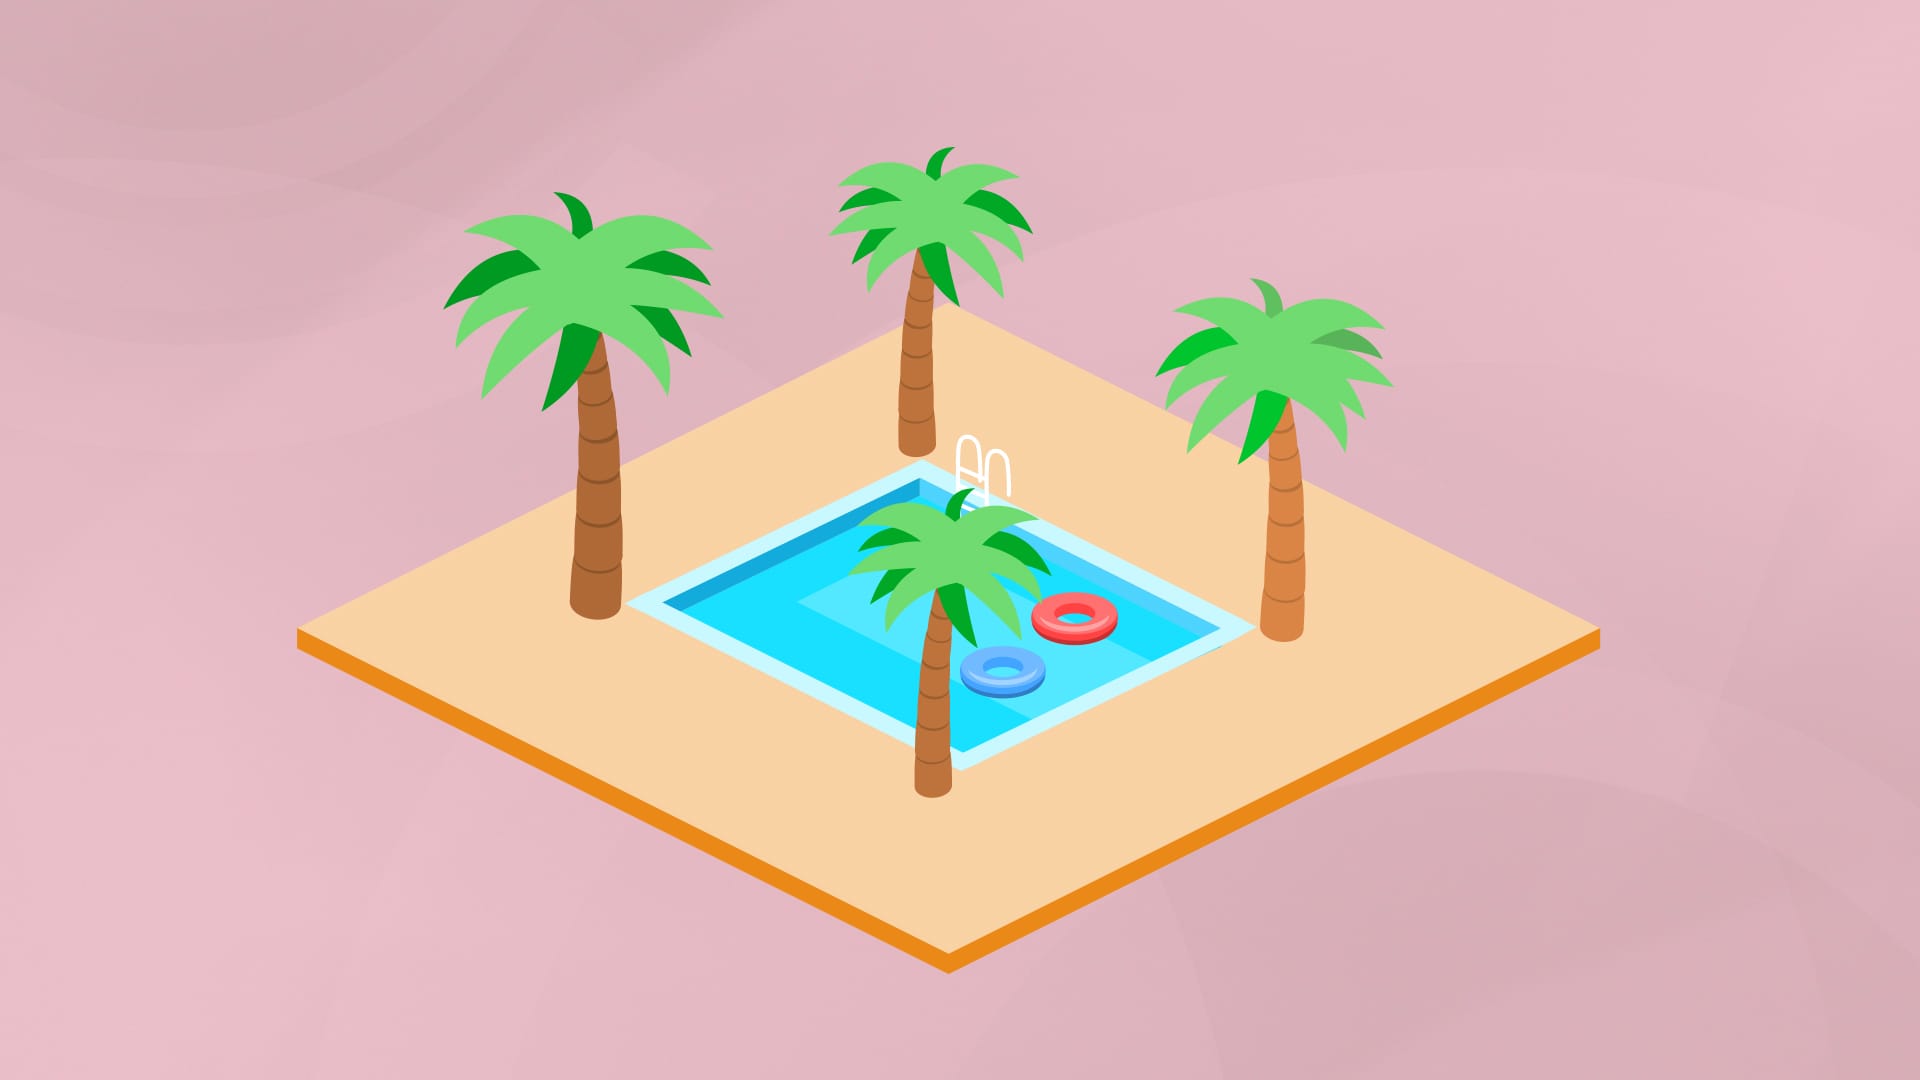 Logik-Rätsel: Wie kann dieser Pool vergrößert werden?